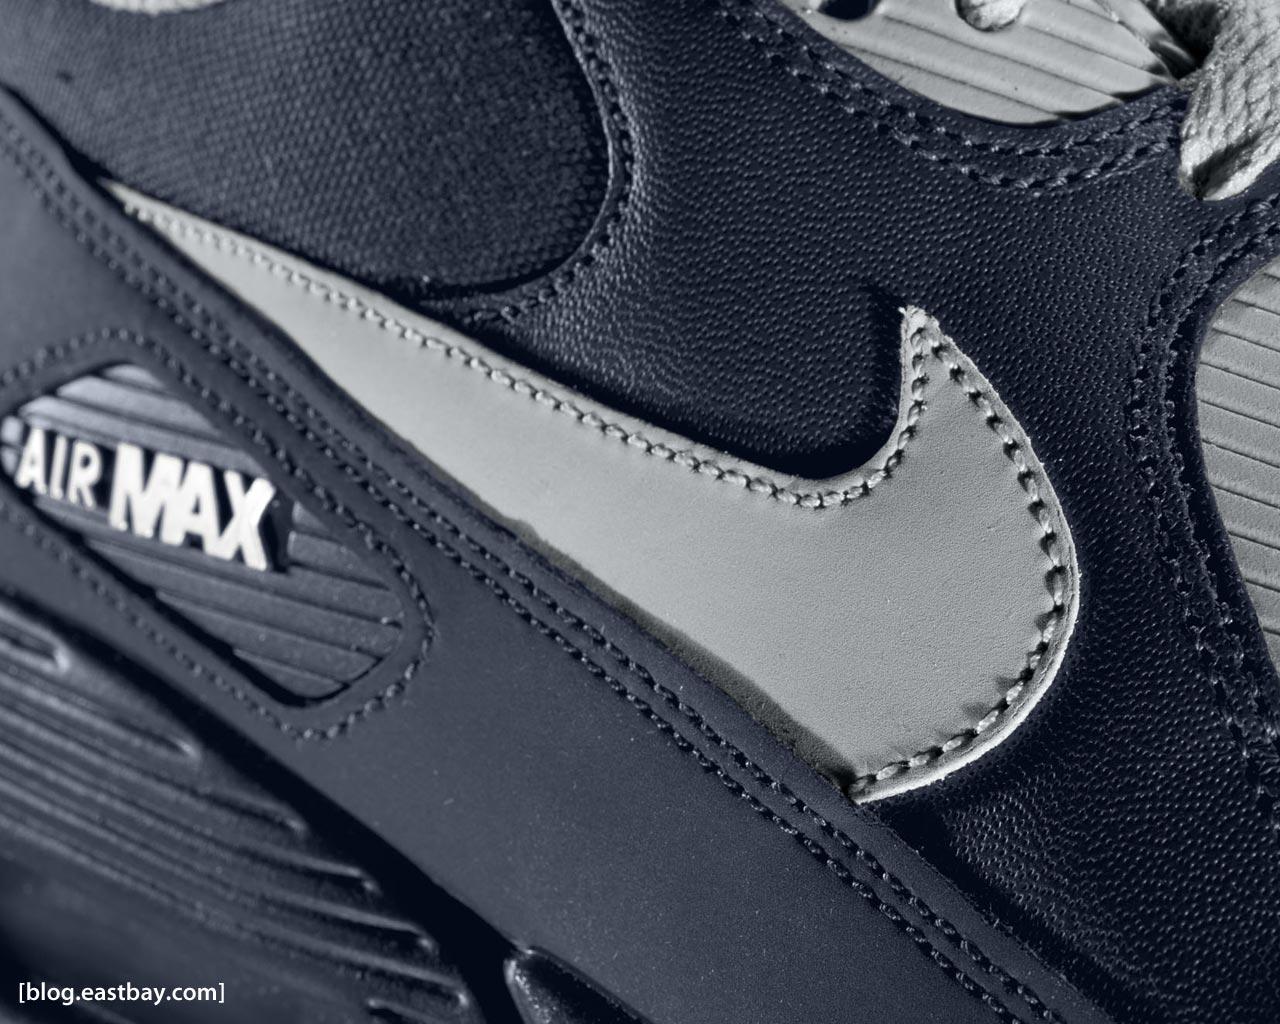 Wallpaper: Nike Air Max 90 Sneak Peek